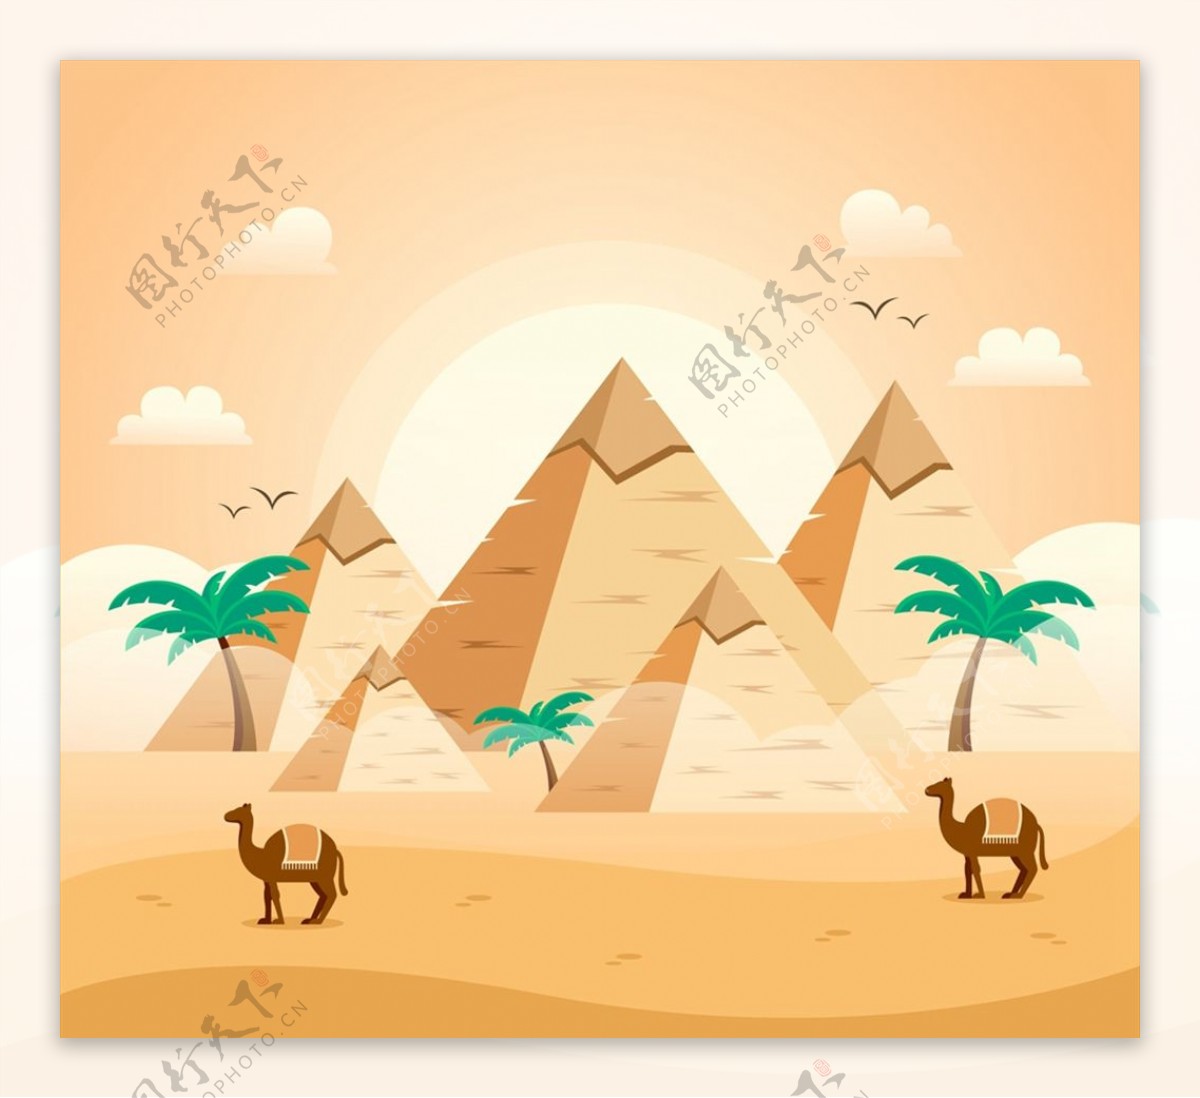 沙漠金字塔风景图片